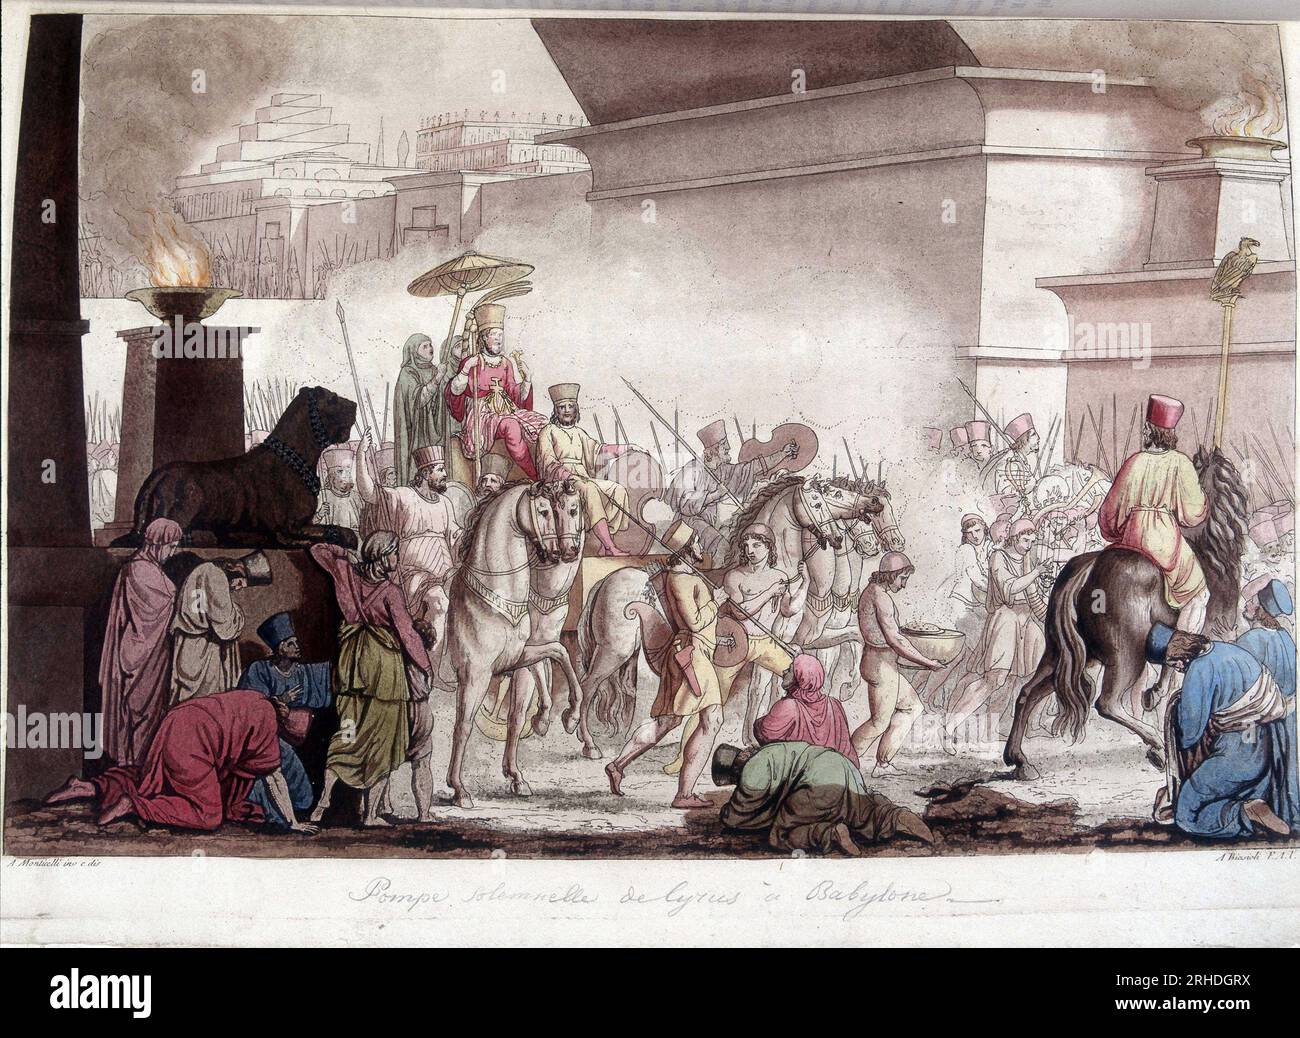 Entree du roi Cyrus II le Grand (580 av. JC - 530 av. JC) en grande pompe dans Babylone - in 'Le costume ancien et moderne' par Ferrario,  1819-20 Stock Photo